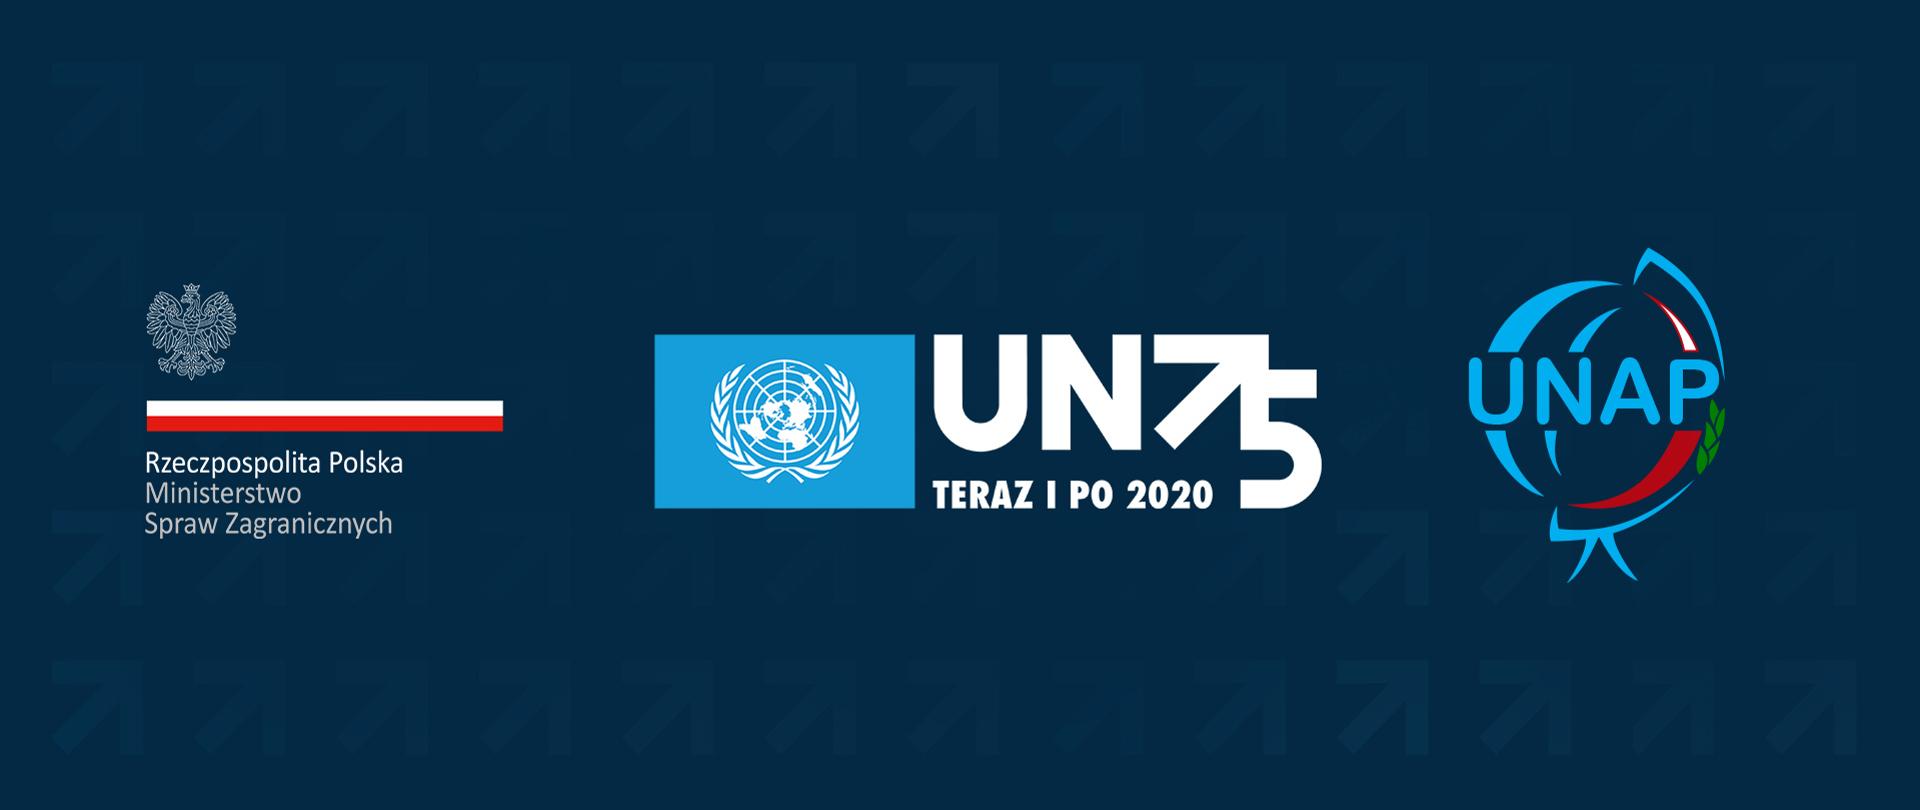 Tydzień ONZ – 75. rocznica utworzenia Organizacji Narodów Zjednoczonych - Logo